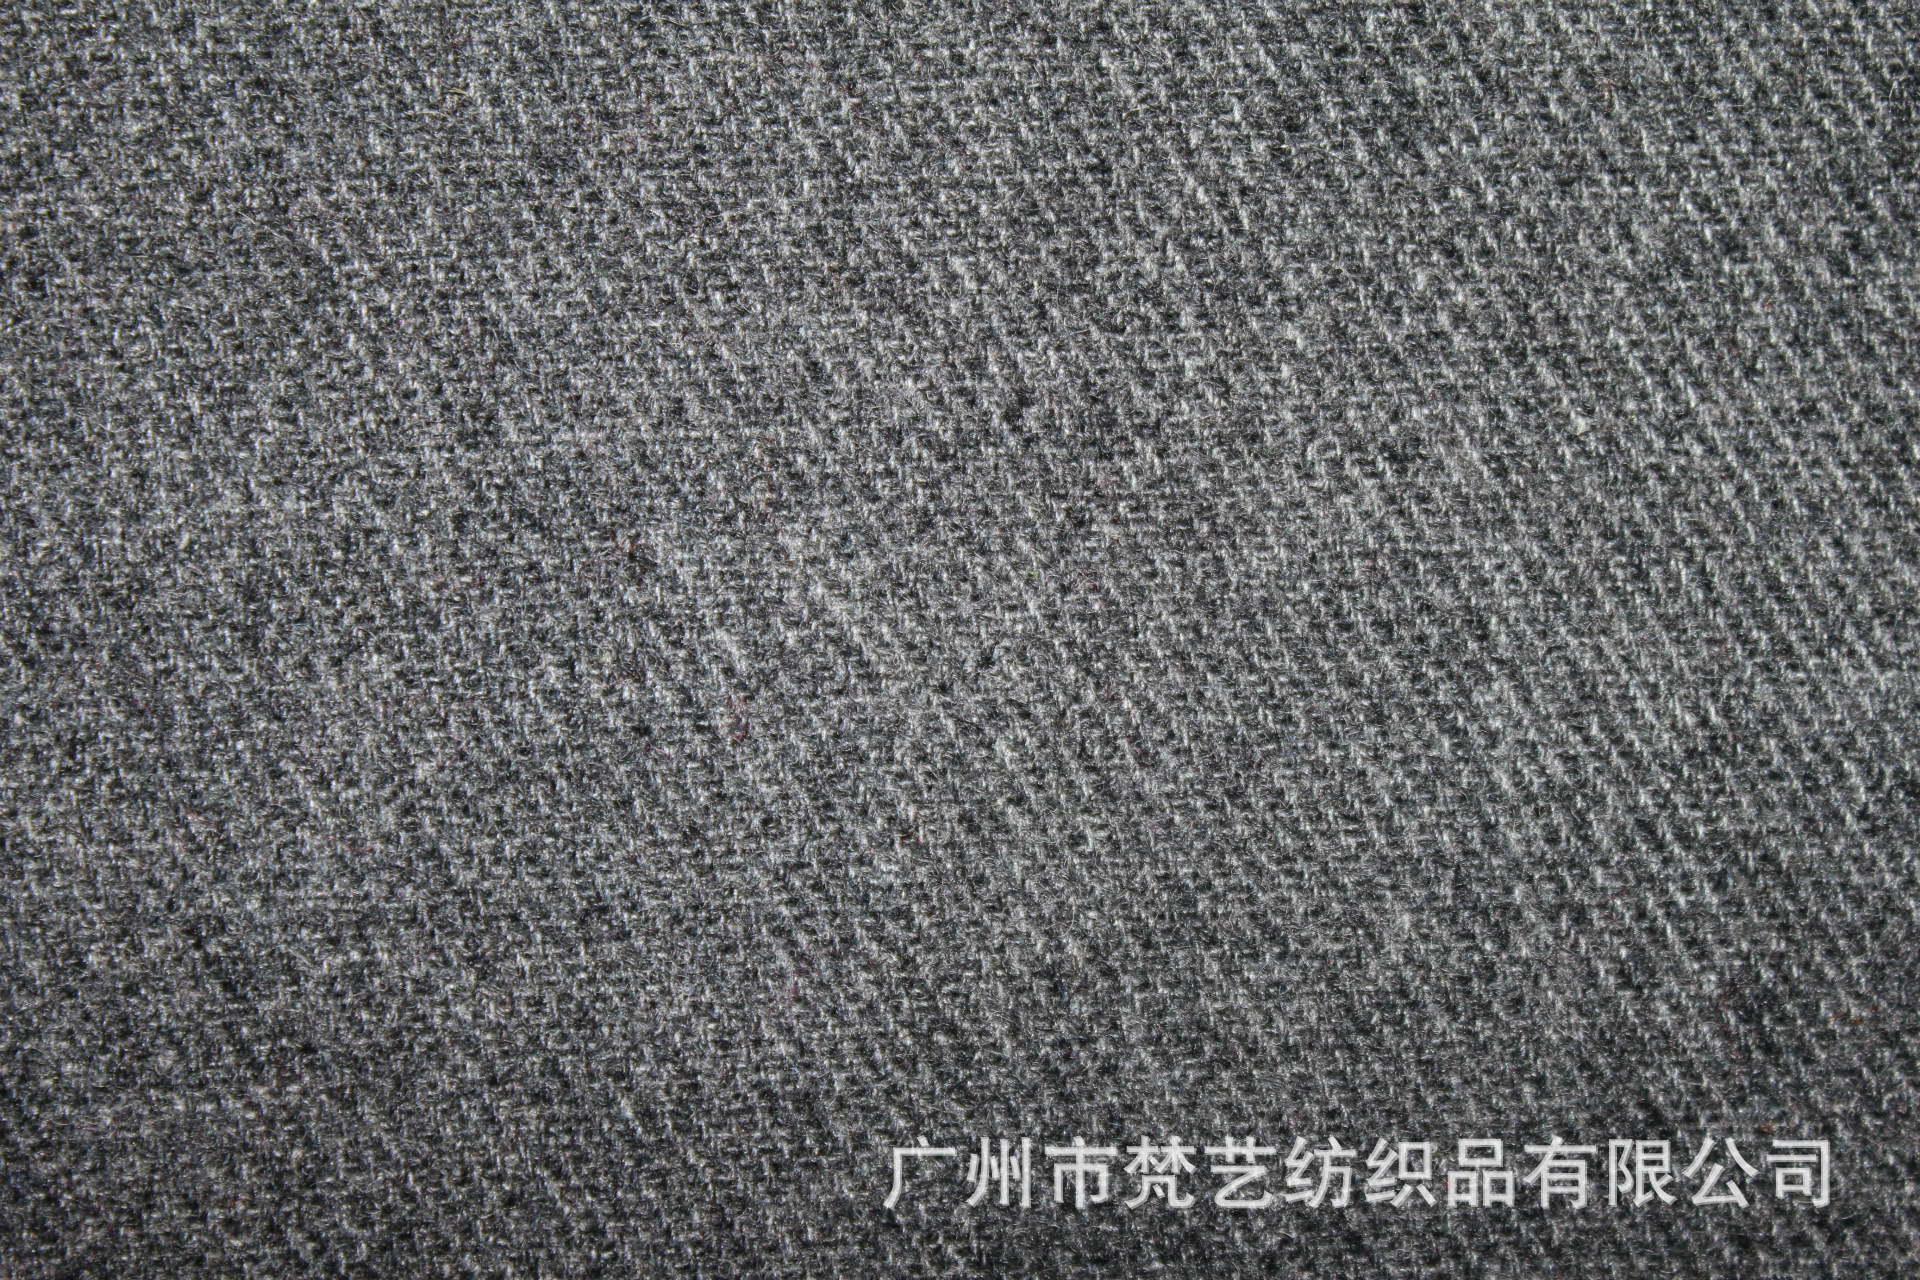 【厂家直销】秋冬高档品牌专供50毛斜纹薄外套大衣毛呢面料